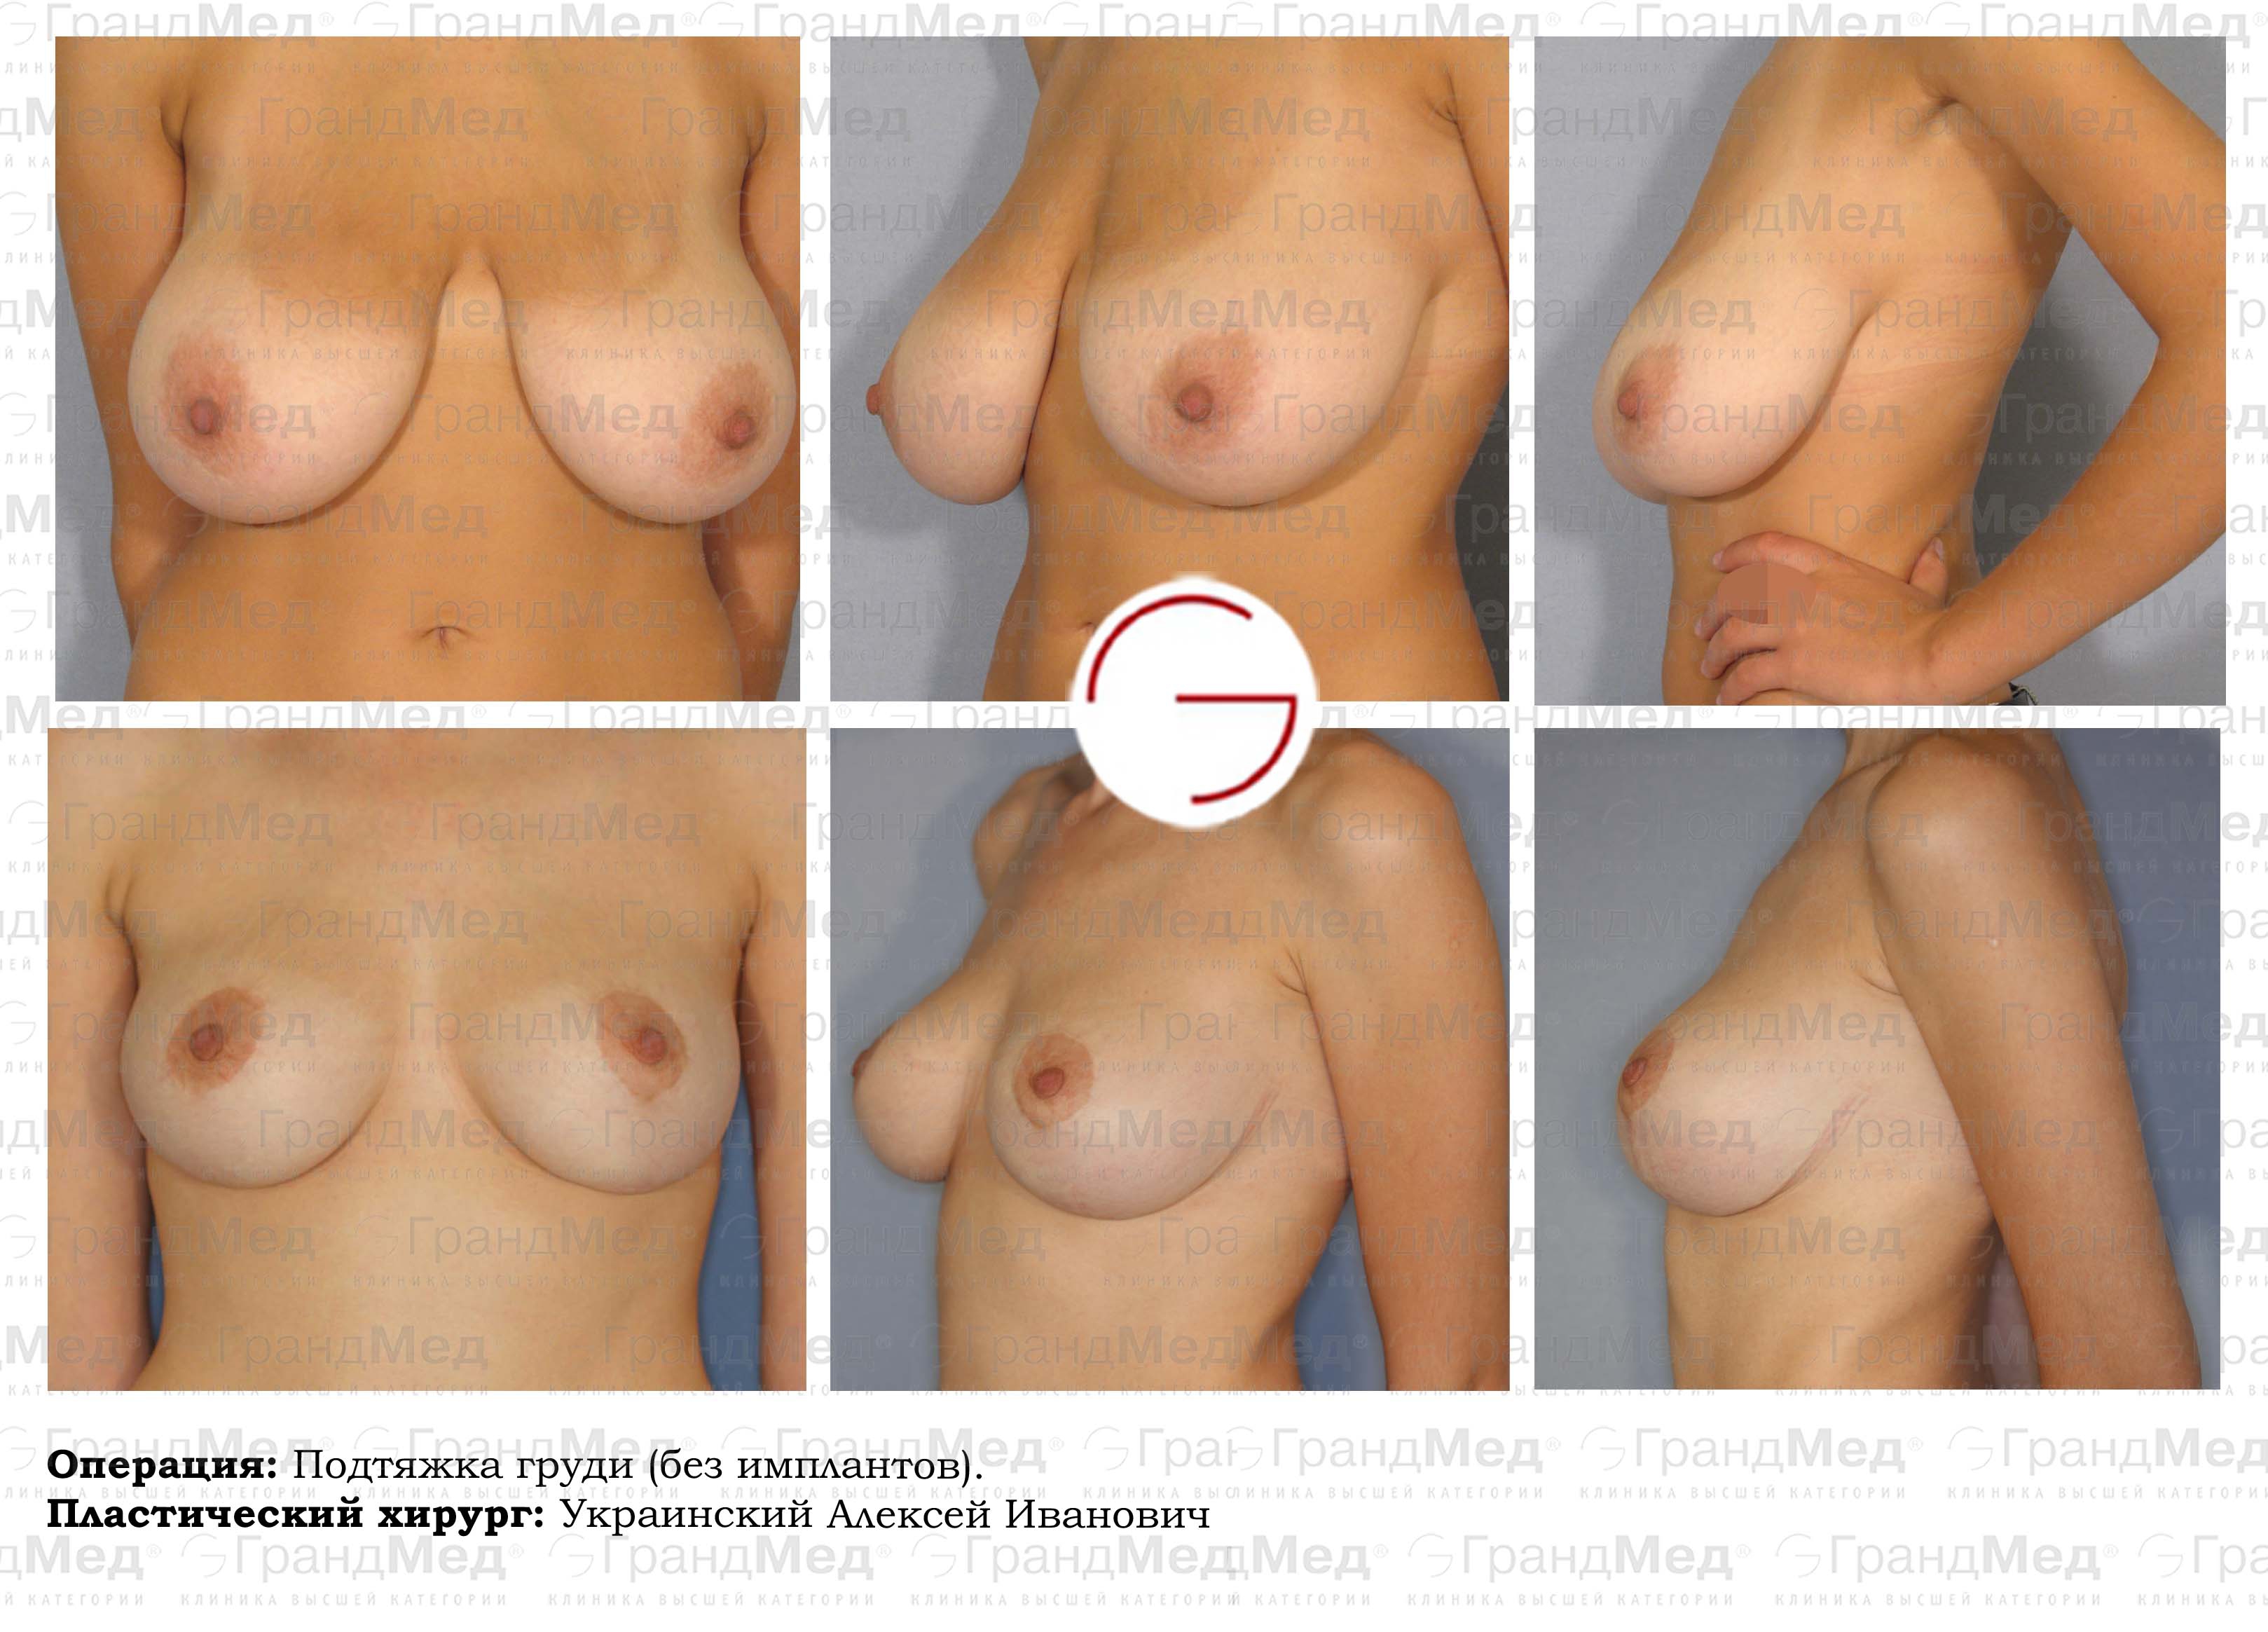 подтяжка груди для женщин фото 15